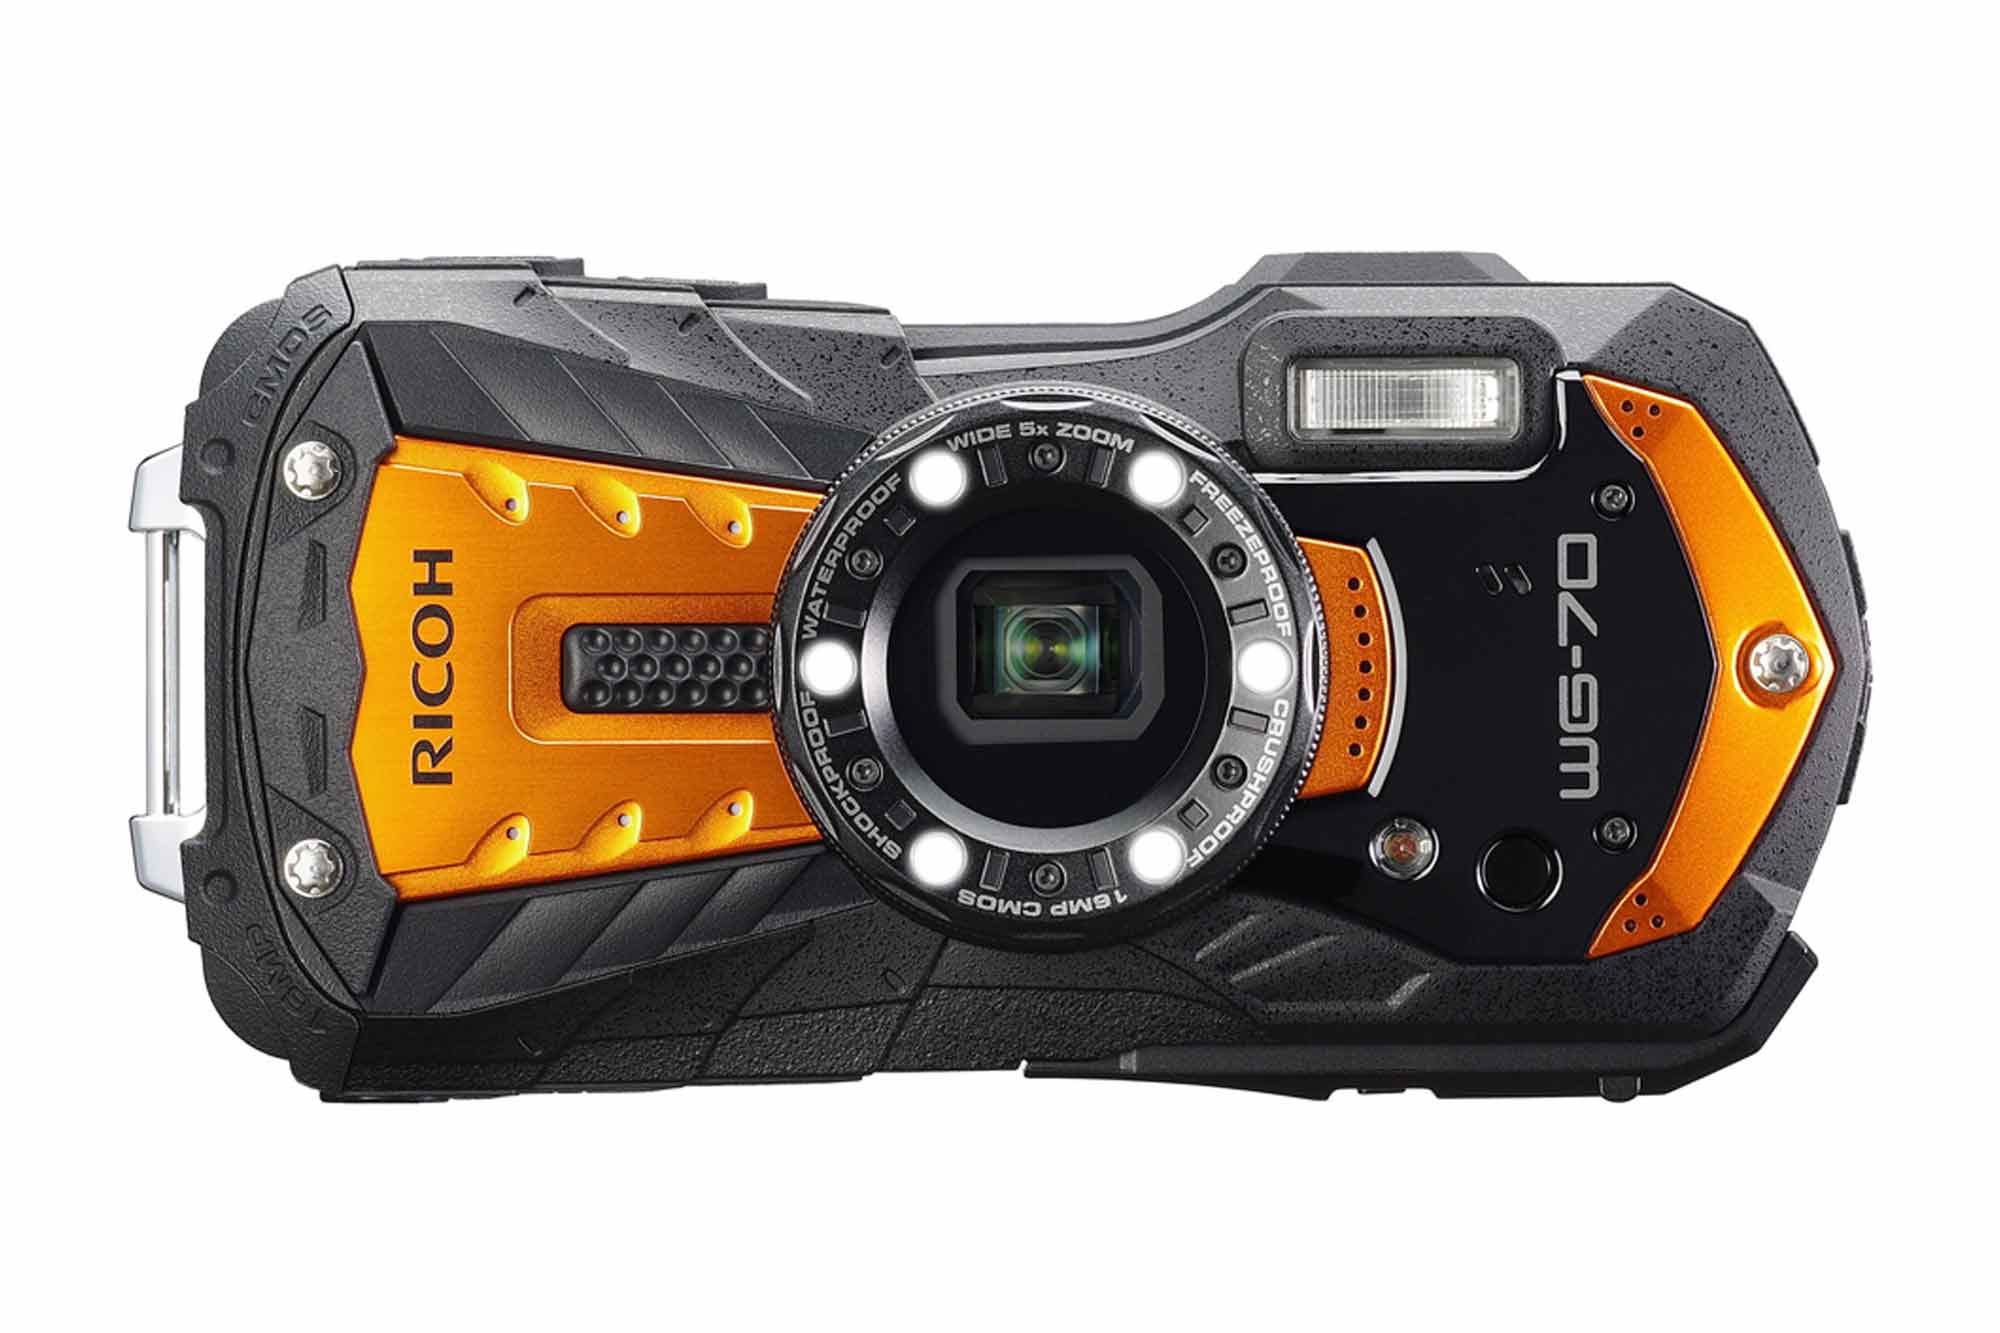 リコー、水深14m での水中撮影が可能なコンパクトデジタルカメラ 『RICOH WG-70』を発表 | VIDEO SALON